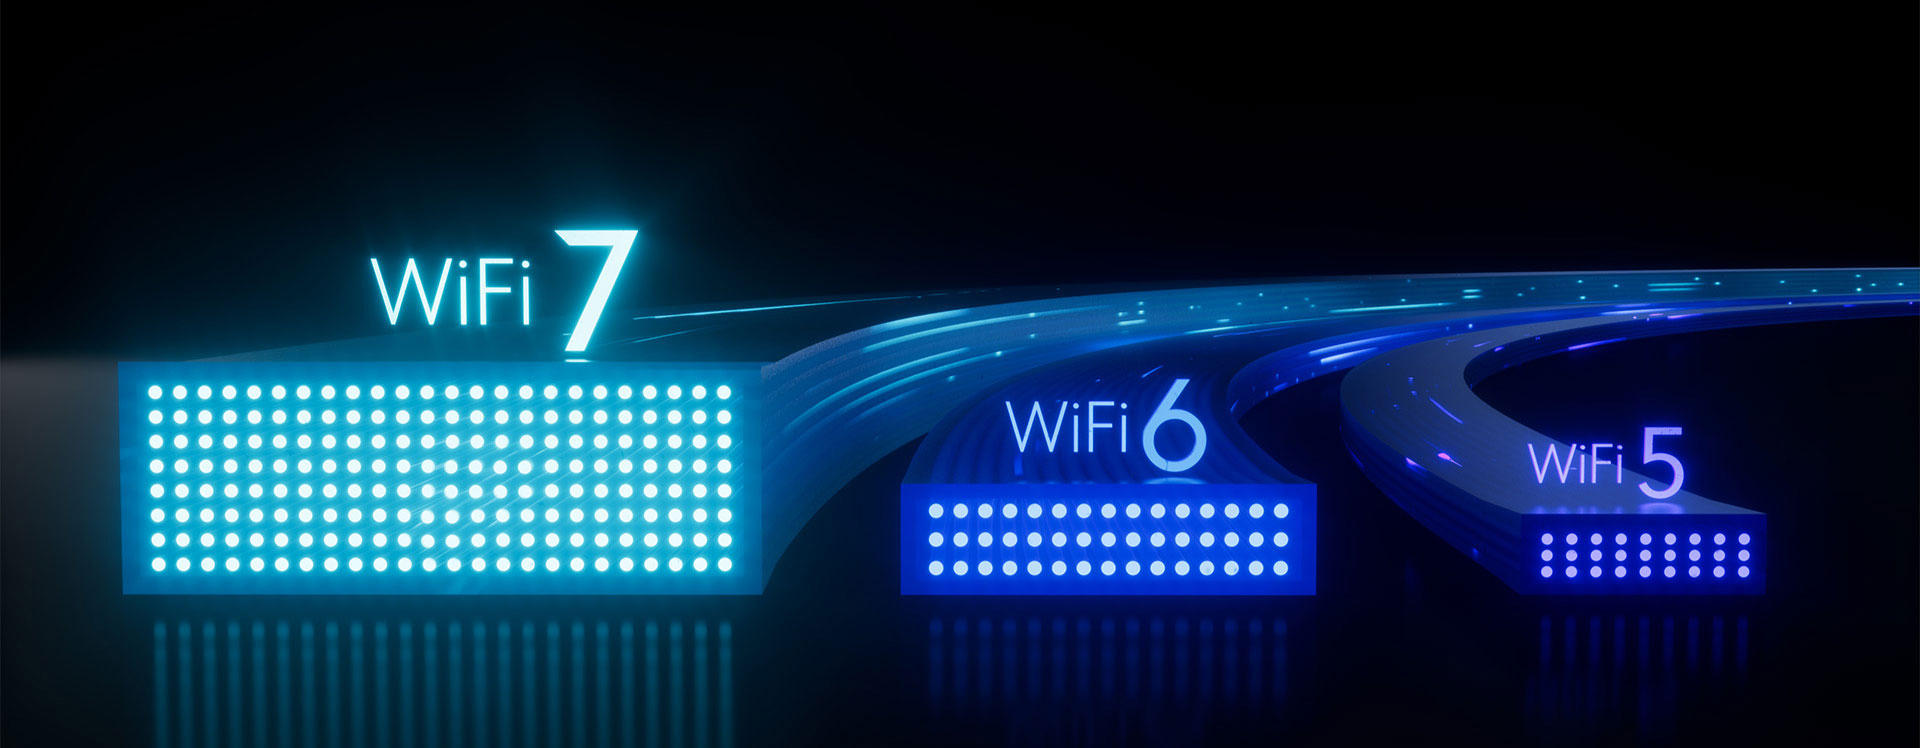 WiFi 7：网速飞跃，未来家庭网络的革命性升级